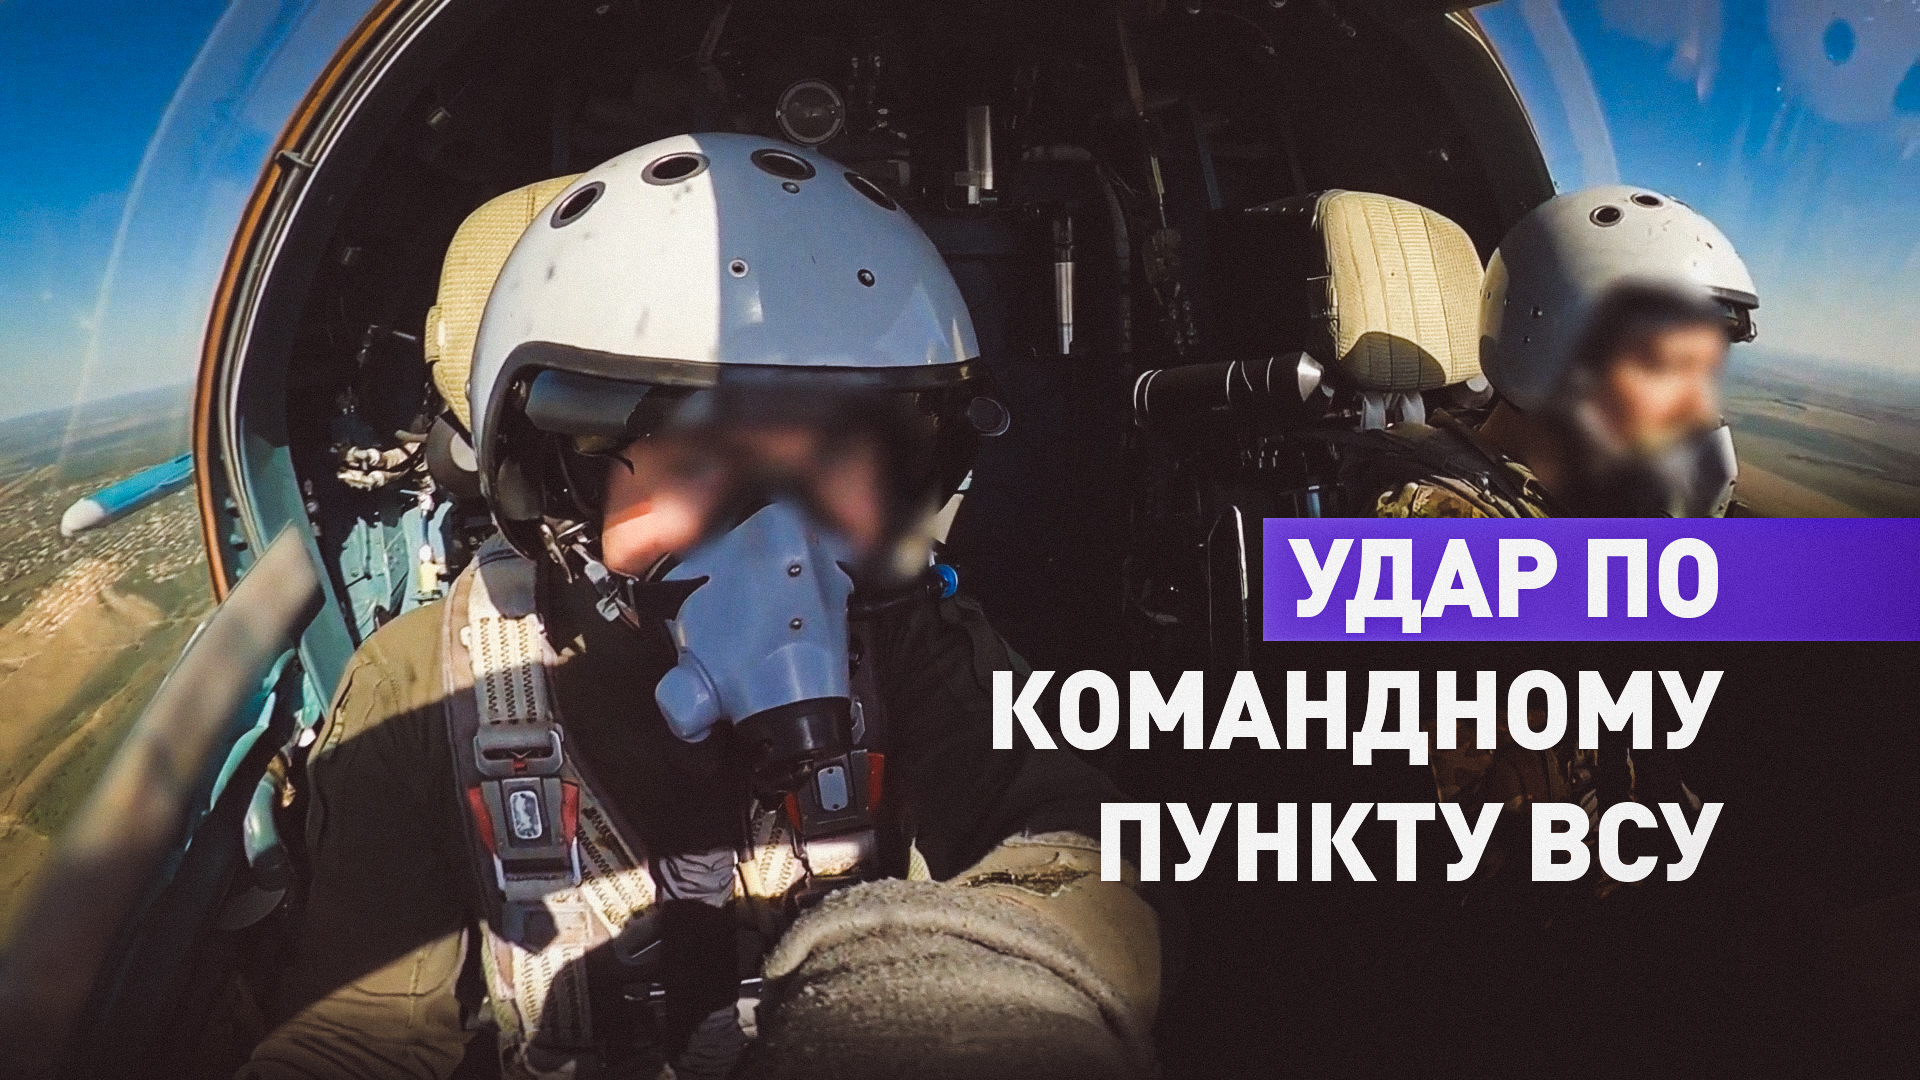 Уничтожение экипажами Су-34 командного пункта ВСУ бомбами с УМПК